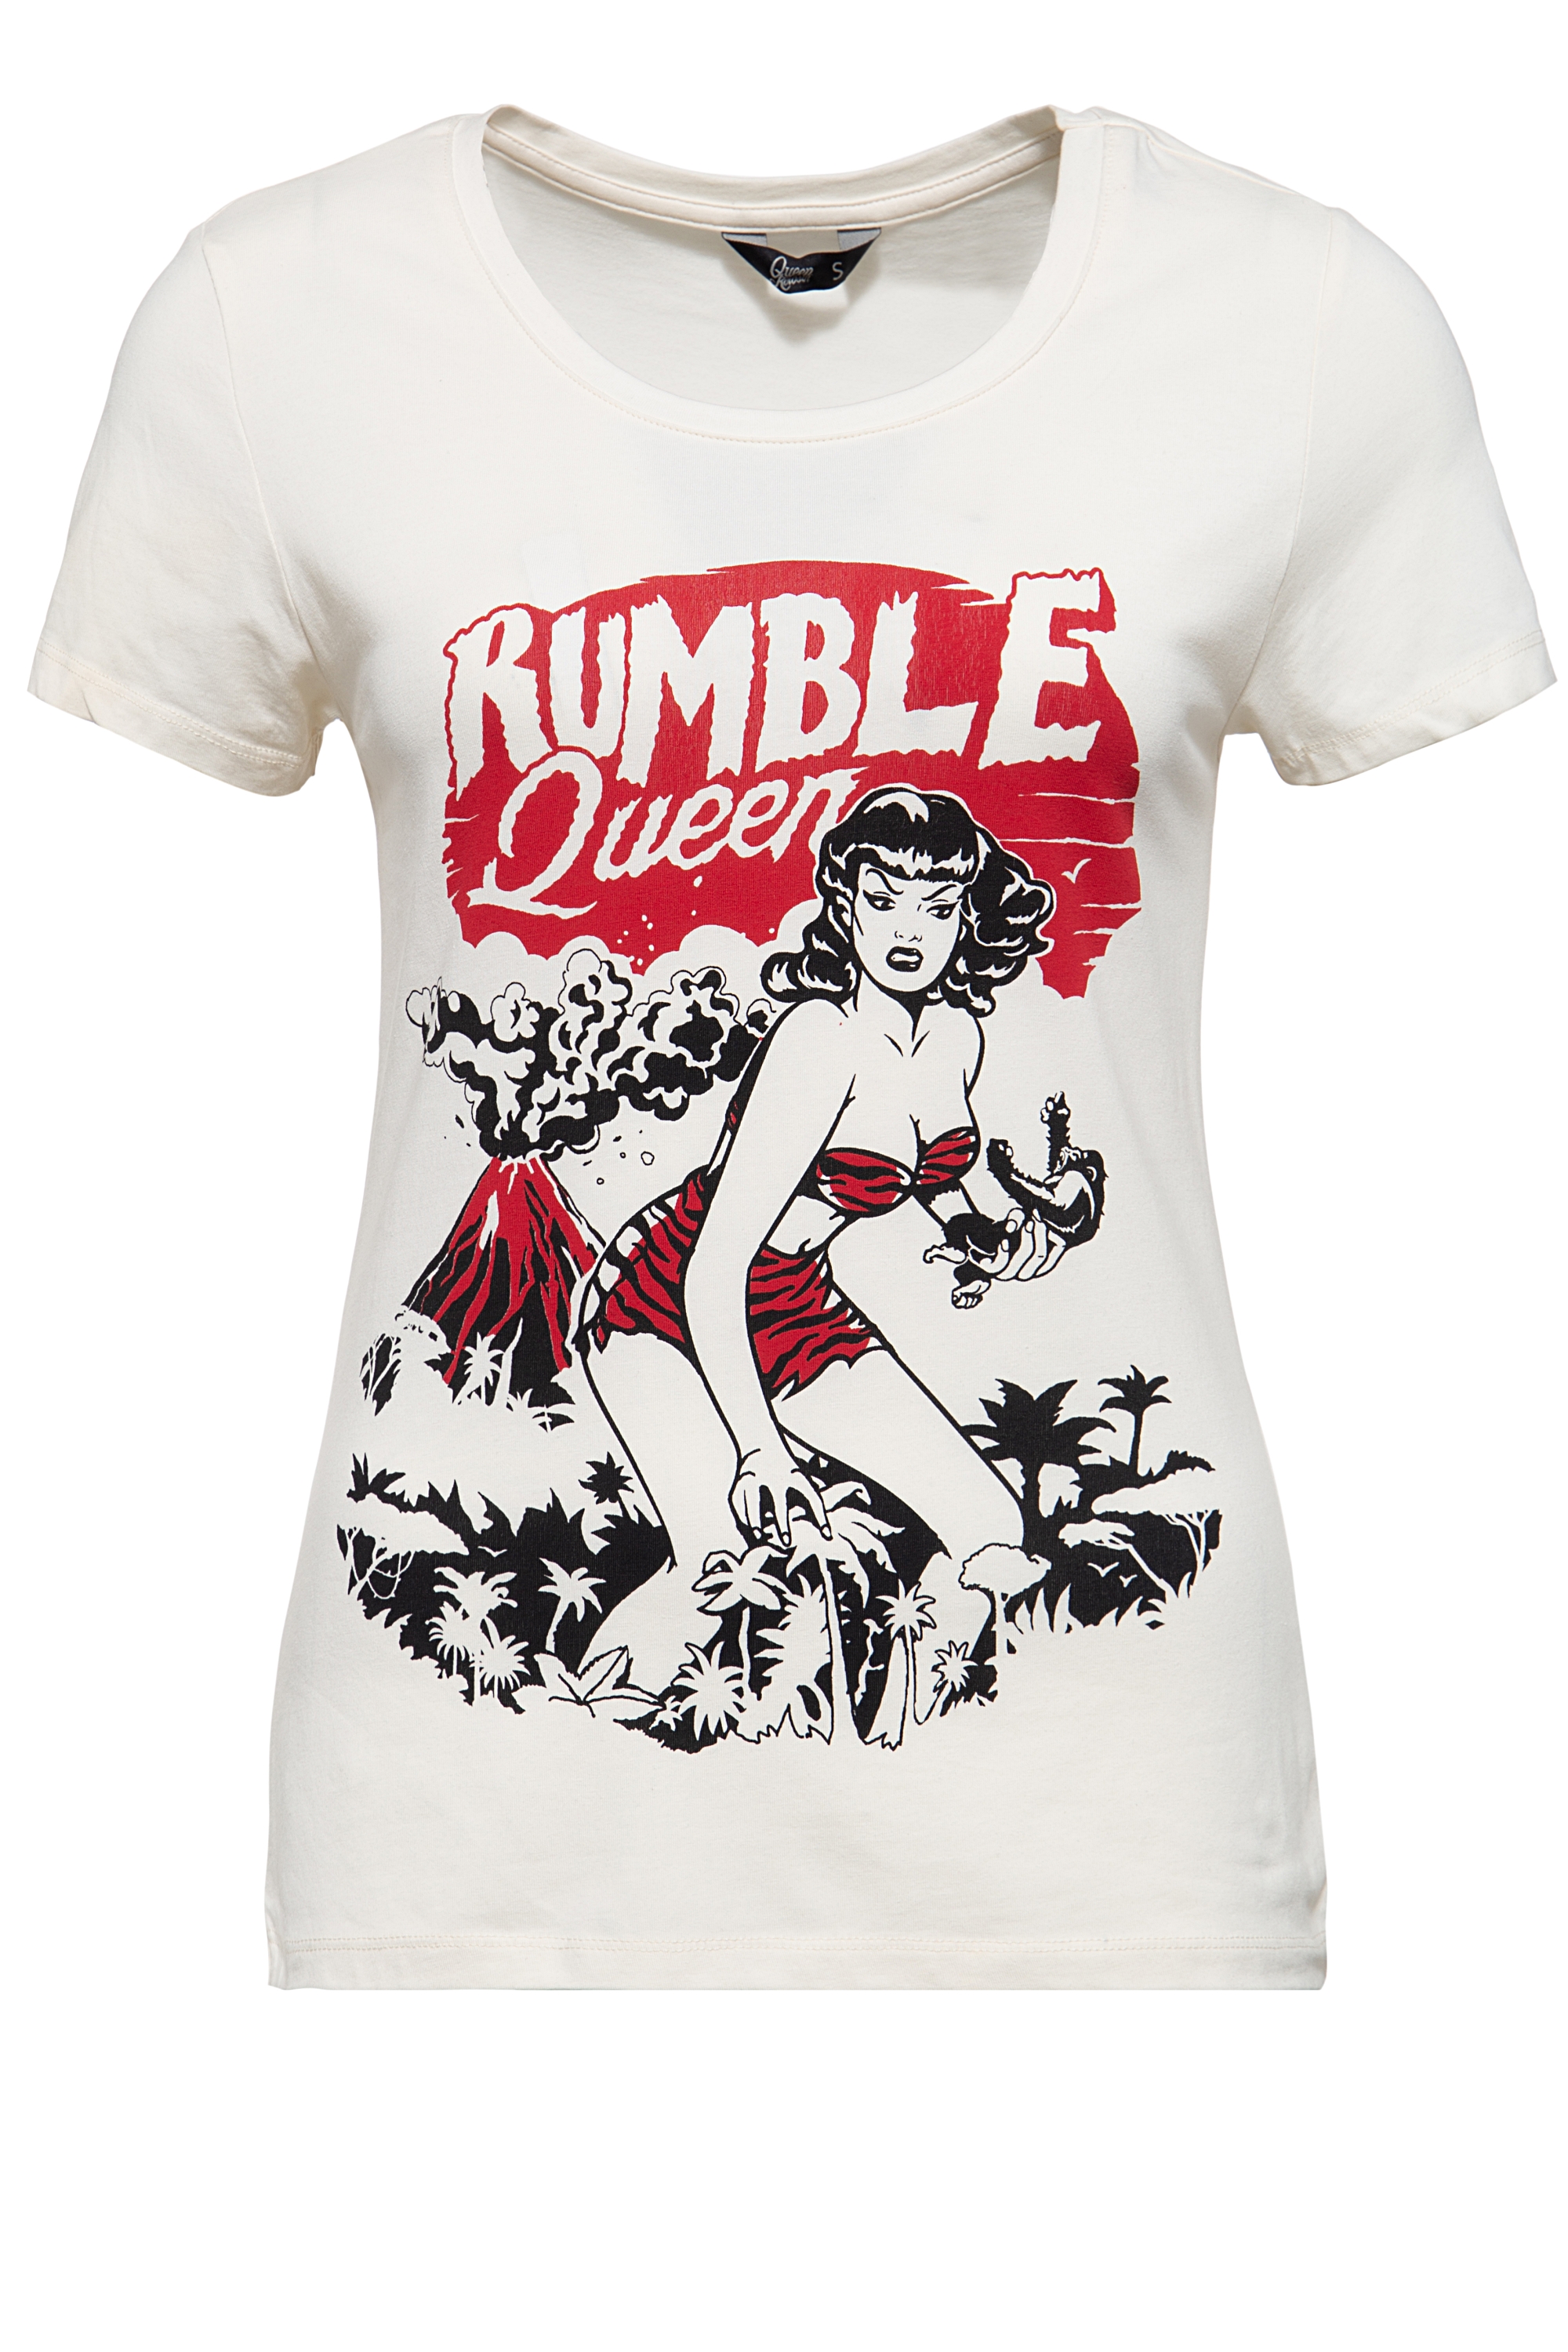 Queen Kerosin T-Shirt - Rumble Queen XL